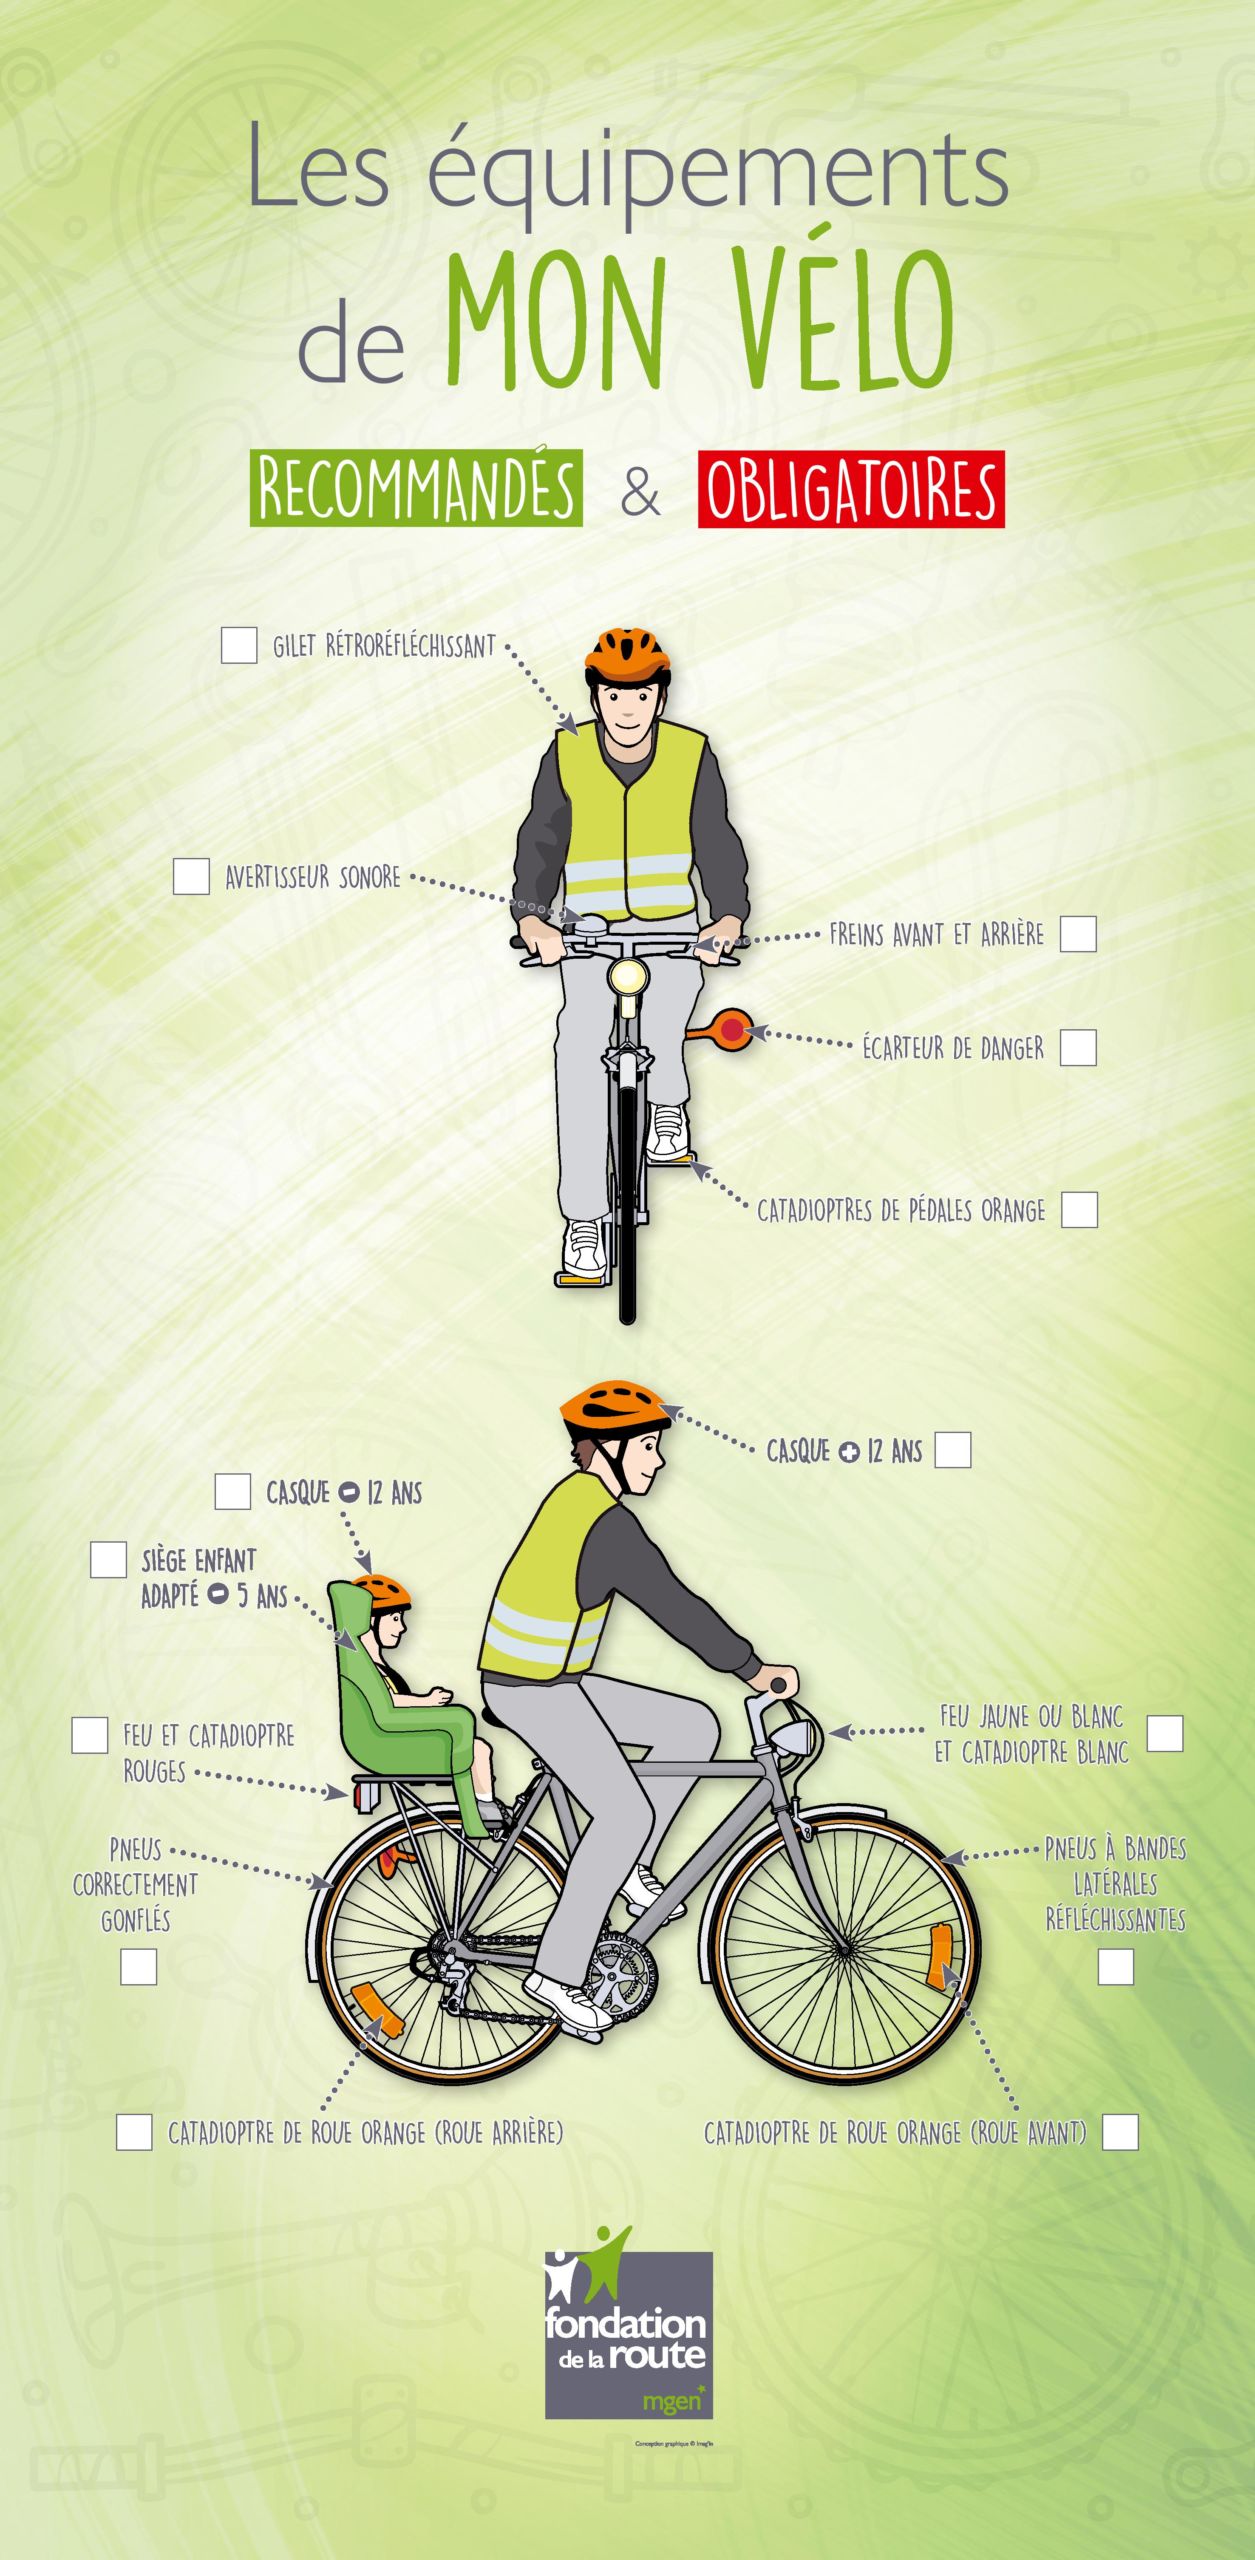 Les équipements obligatoires à vélo